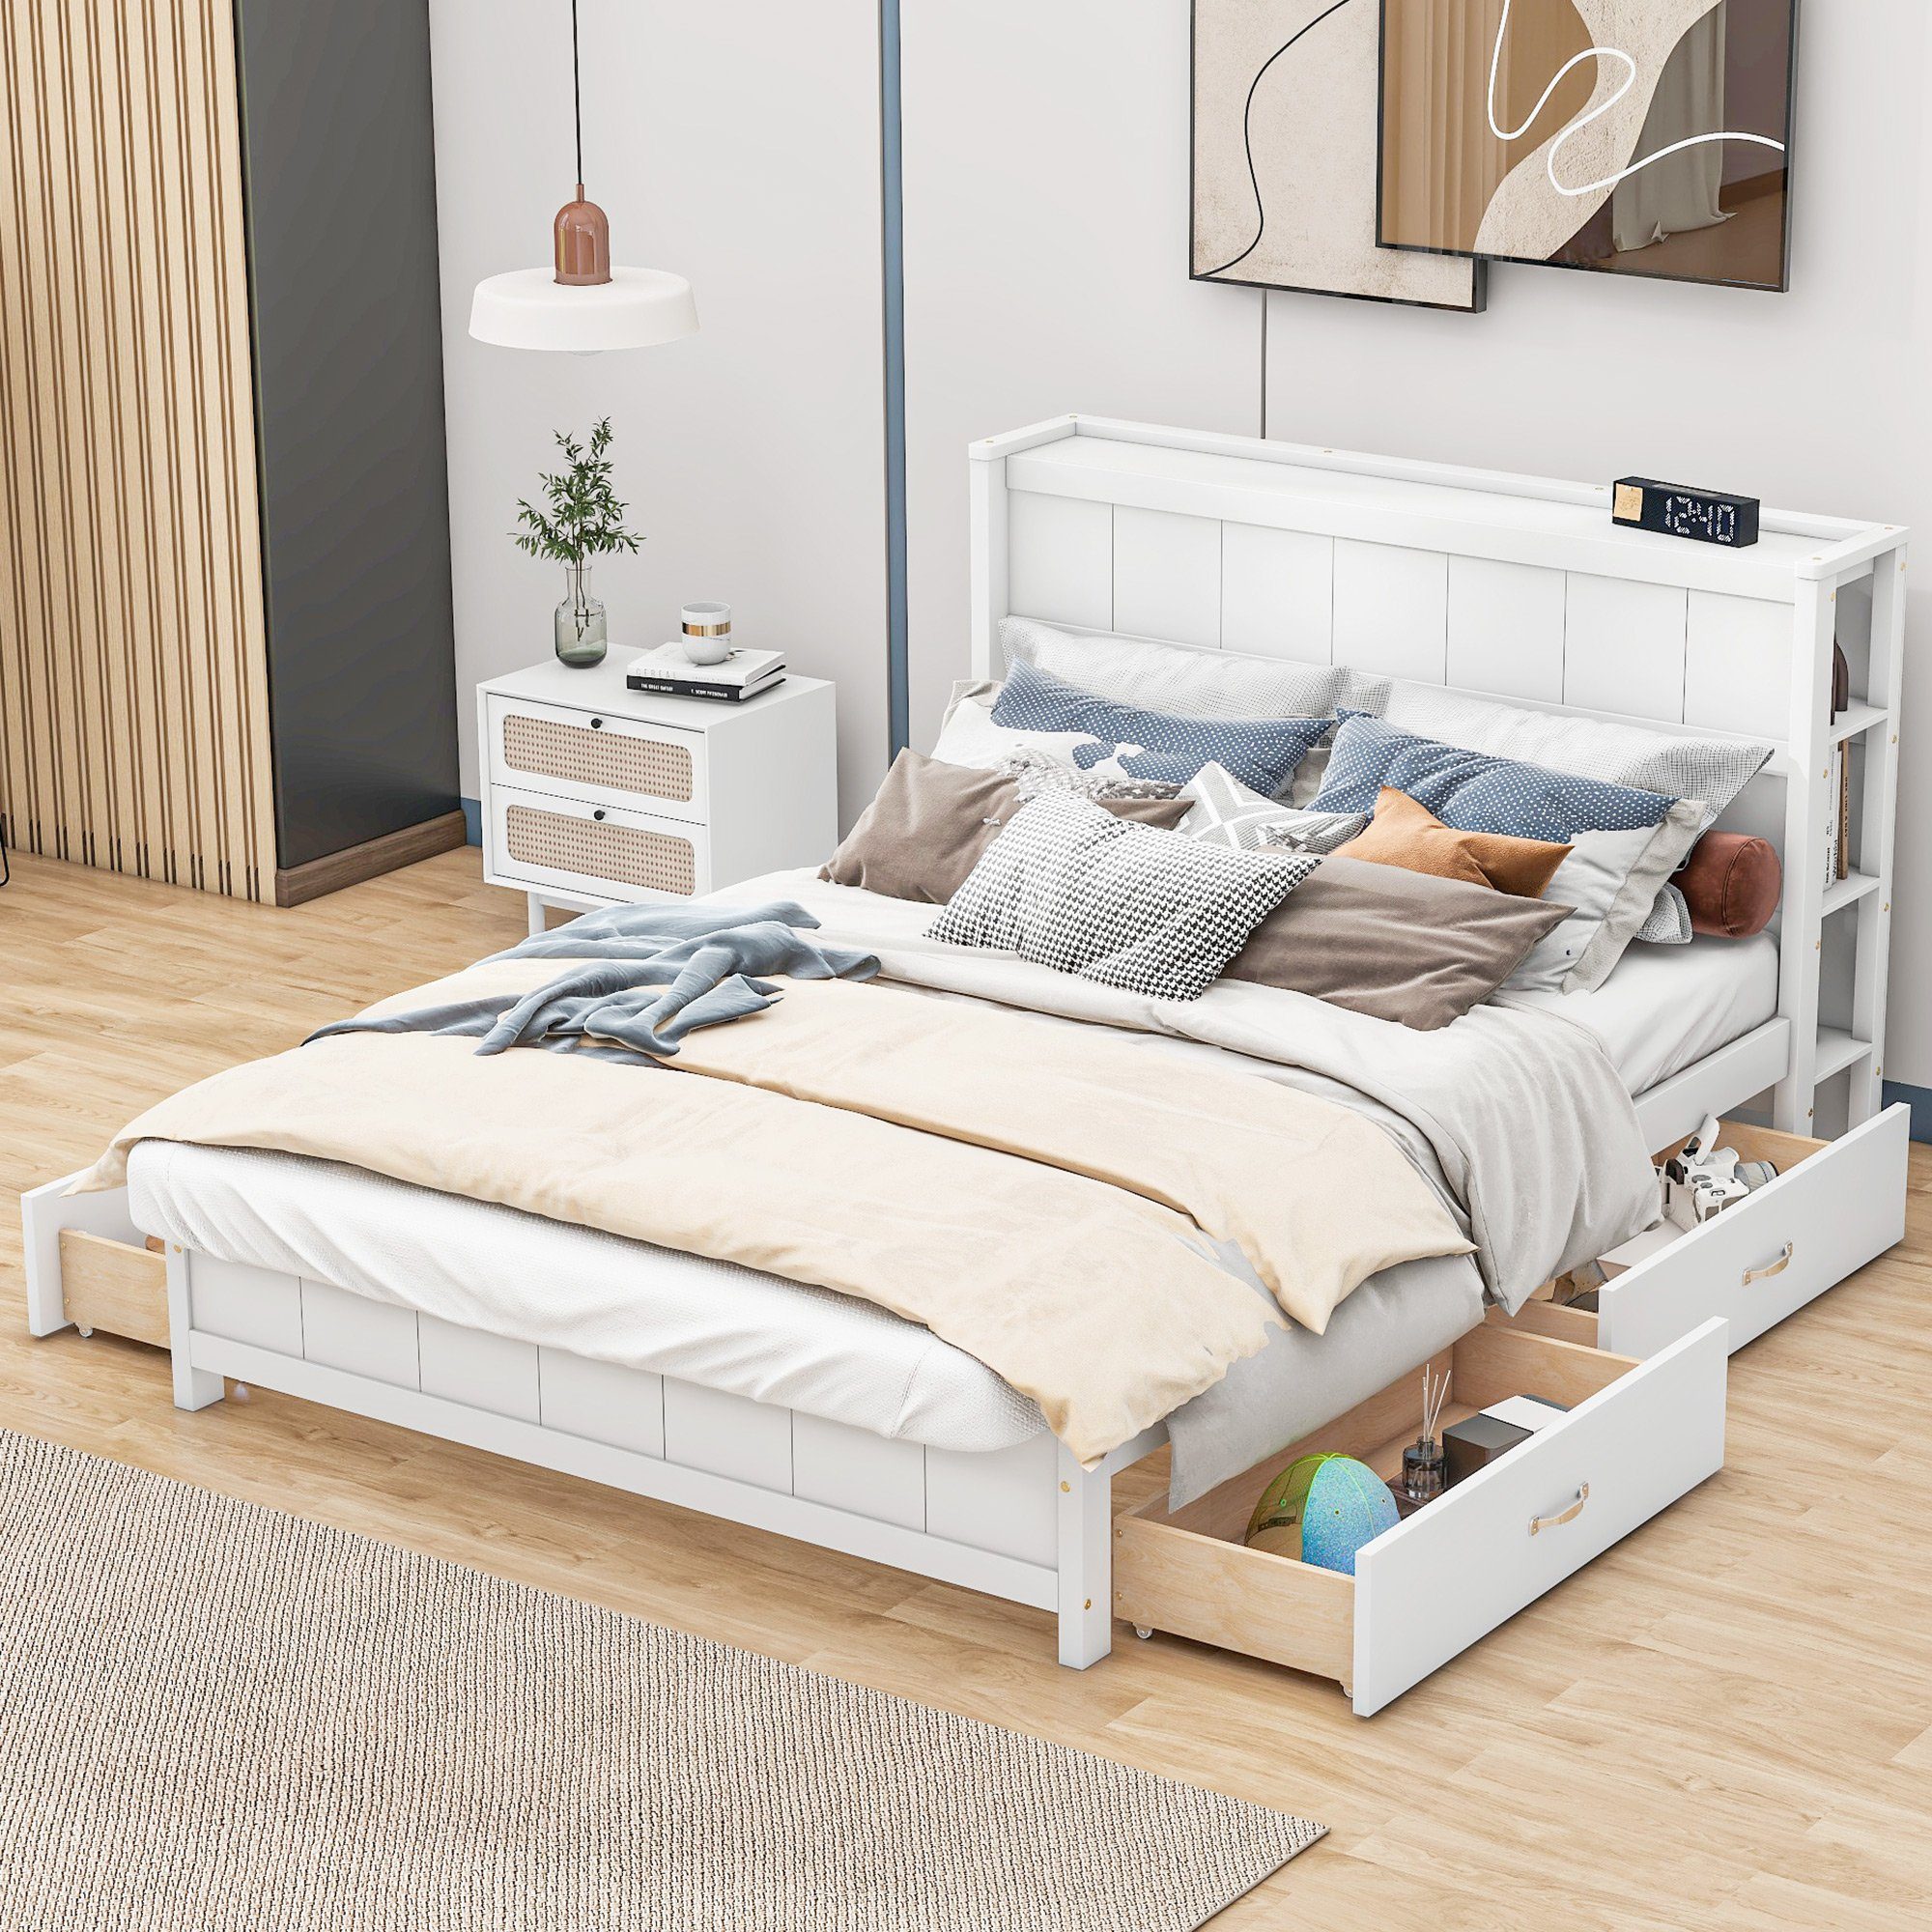 REDOM Massivholzbett Doppelbett mit Stauraum am Kopfende 140x200cm (mit Vier Schubladen unter dem Bett), ohne Matratze